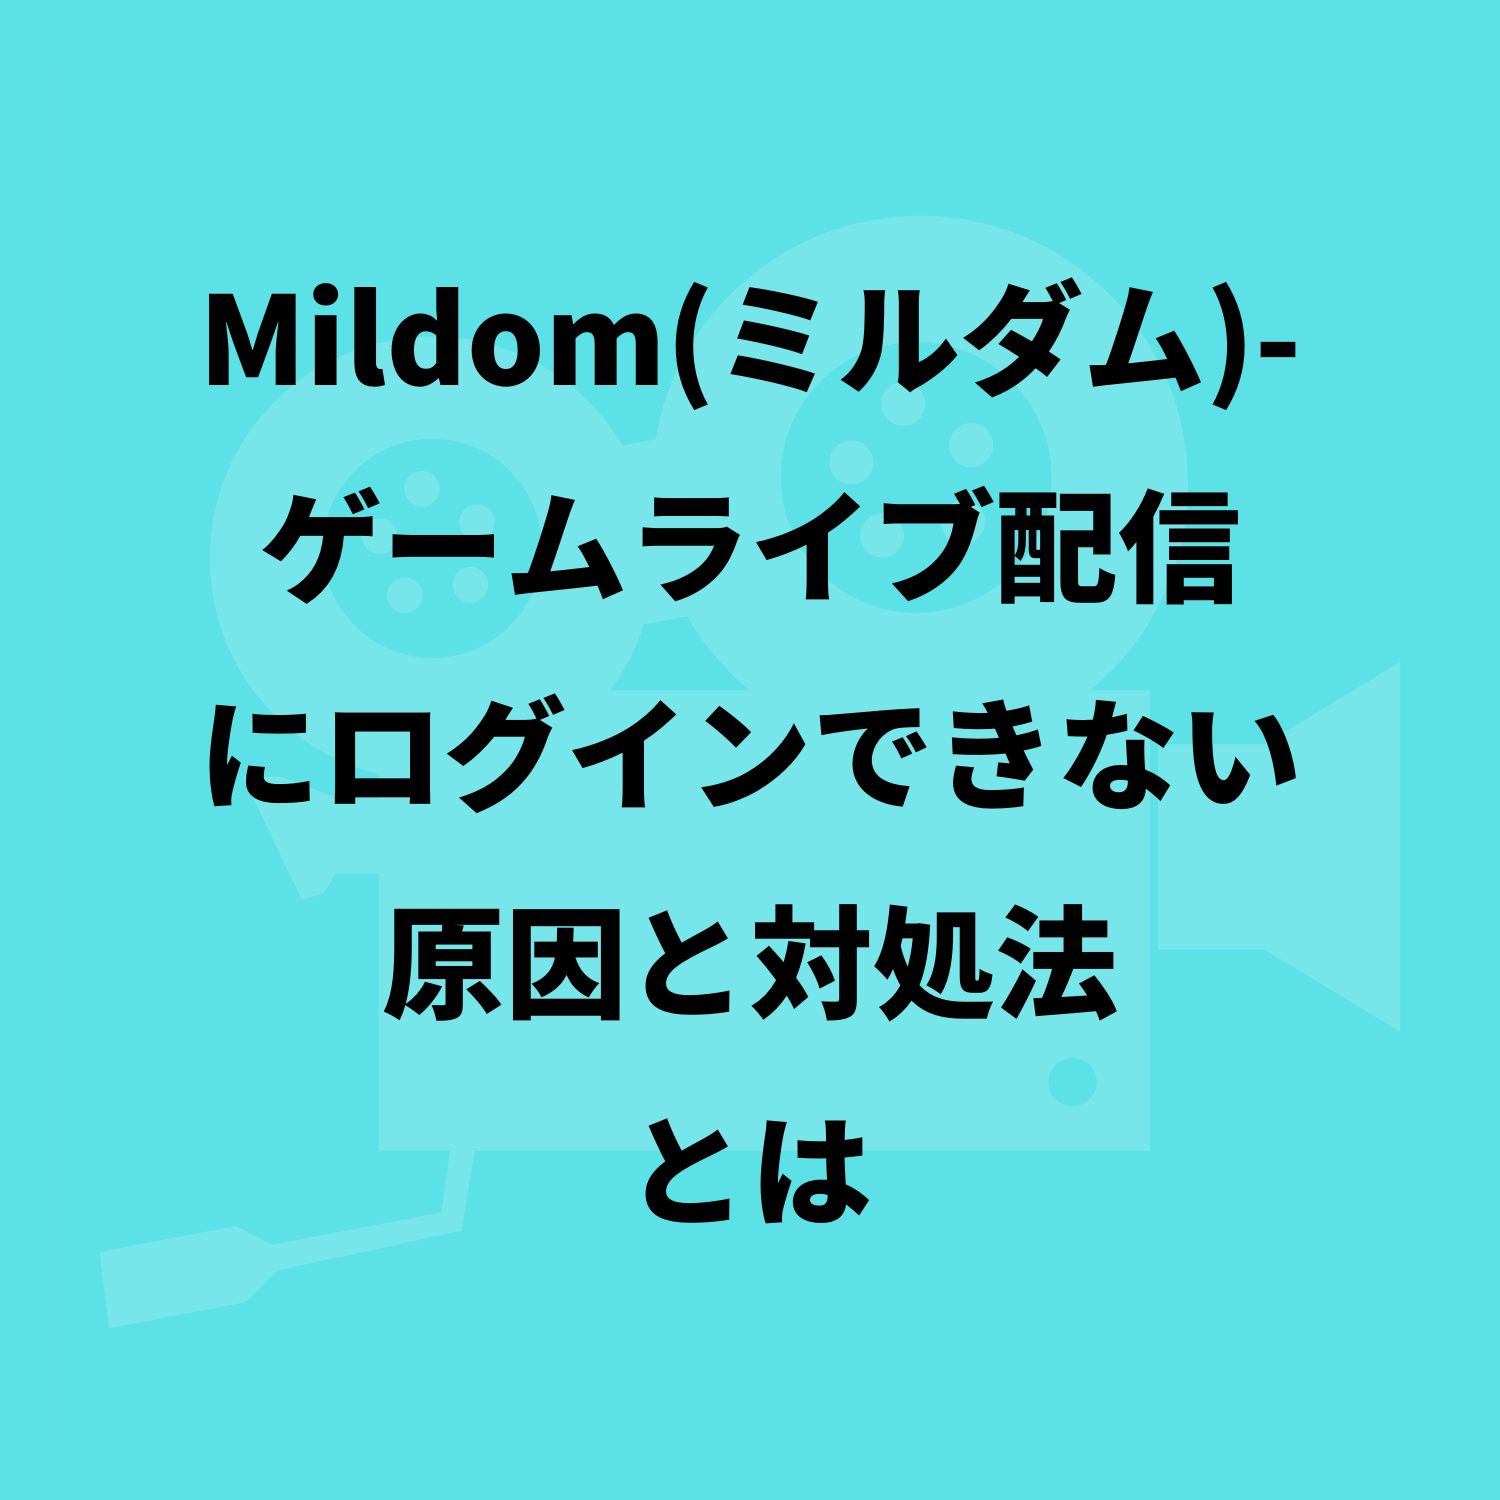 Mildom（ミルダム）−ゲームライブ配信にログインできない原因と対処法とは #Mildom（ミルダム）−ゲームライブ配信